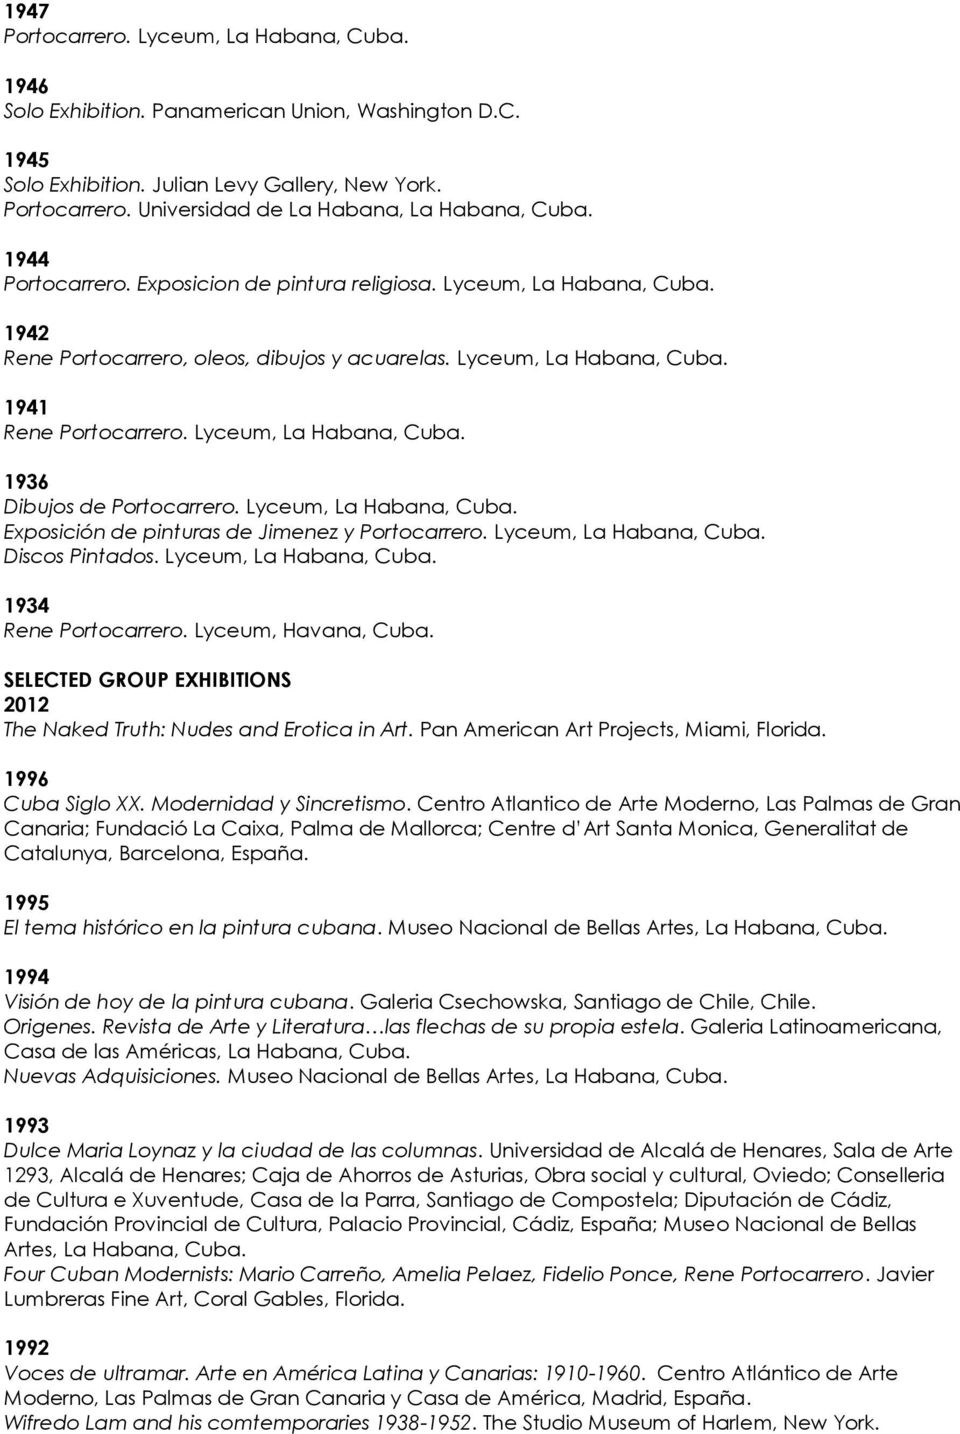 Lyceum, La Habana, Exposición de pinturas de Jimenez y Portocarrero. Lyceum, La Habana, Discos Pintados. Lyceum, La Habana, 1934 Rene Portocarrero.